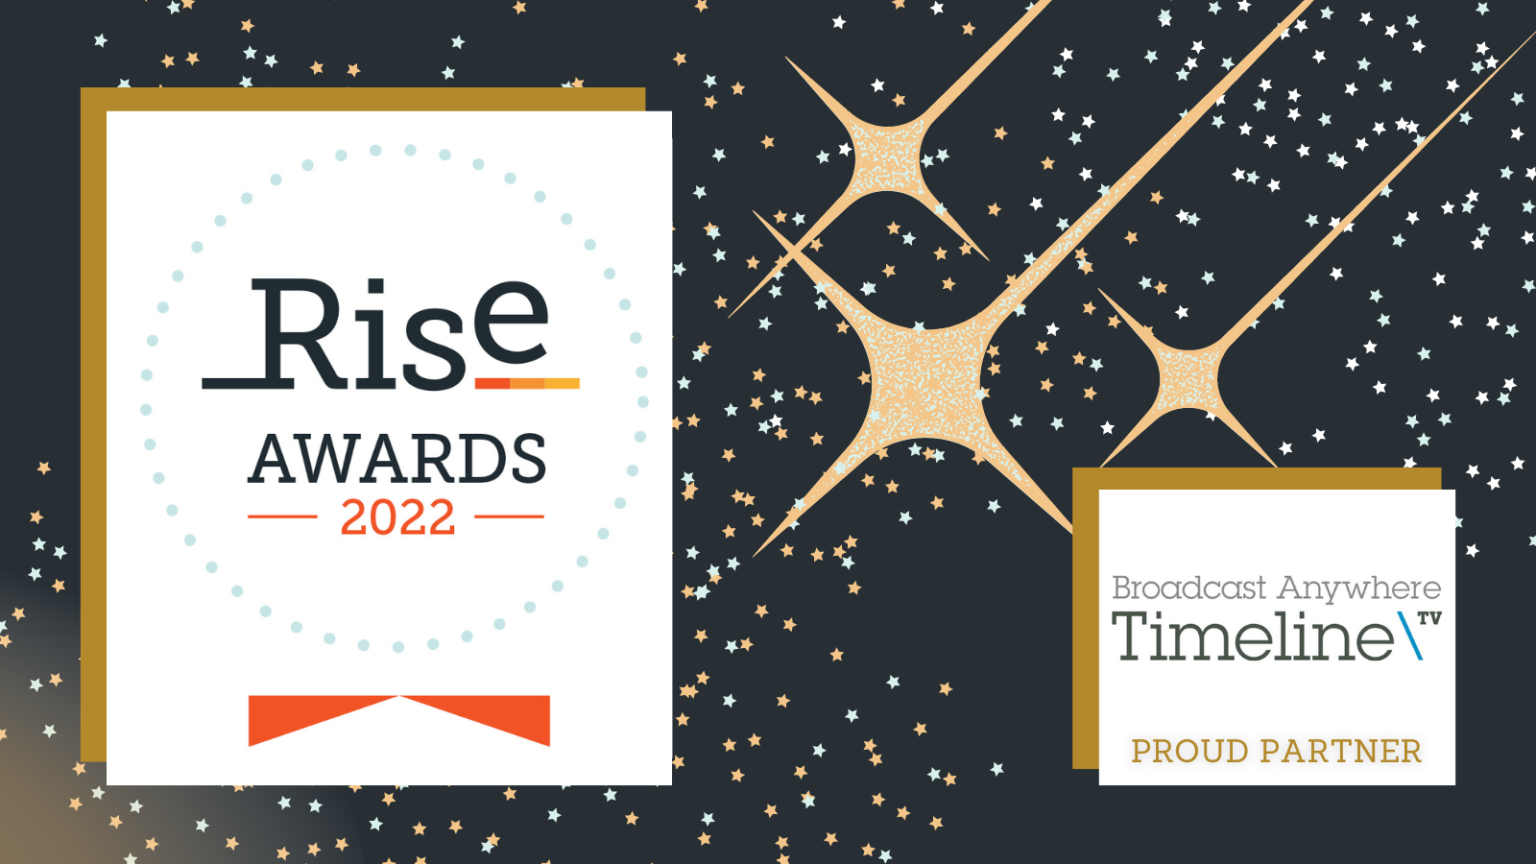 Timeline sponsors Rise Awards 2022 Timeline Television Ltd.